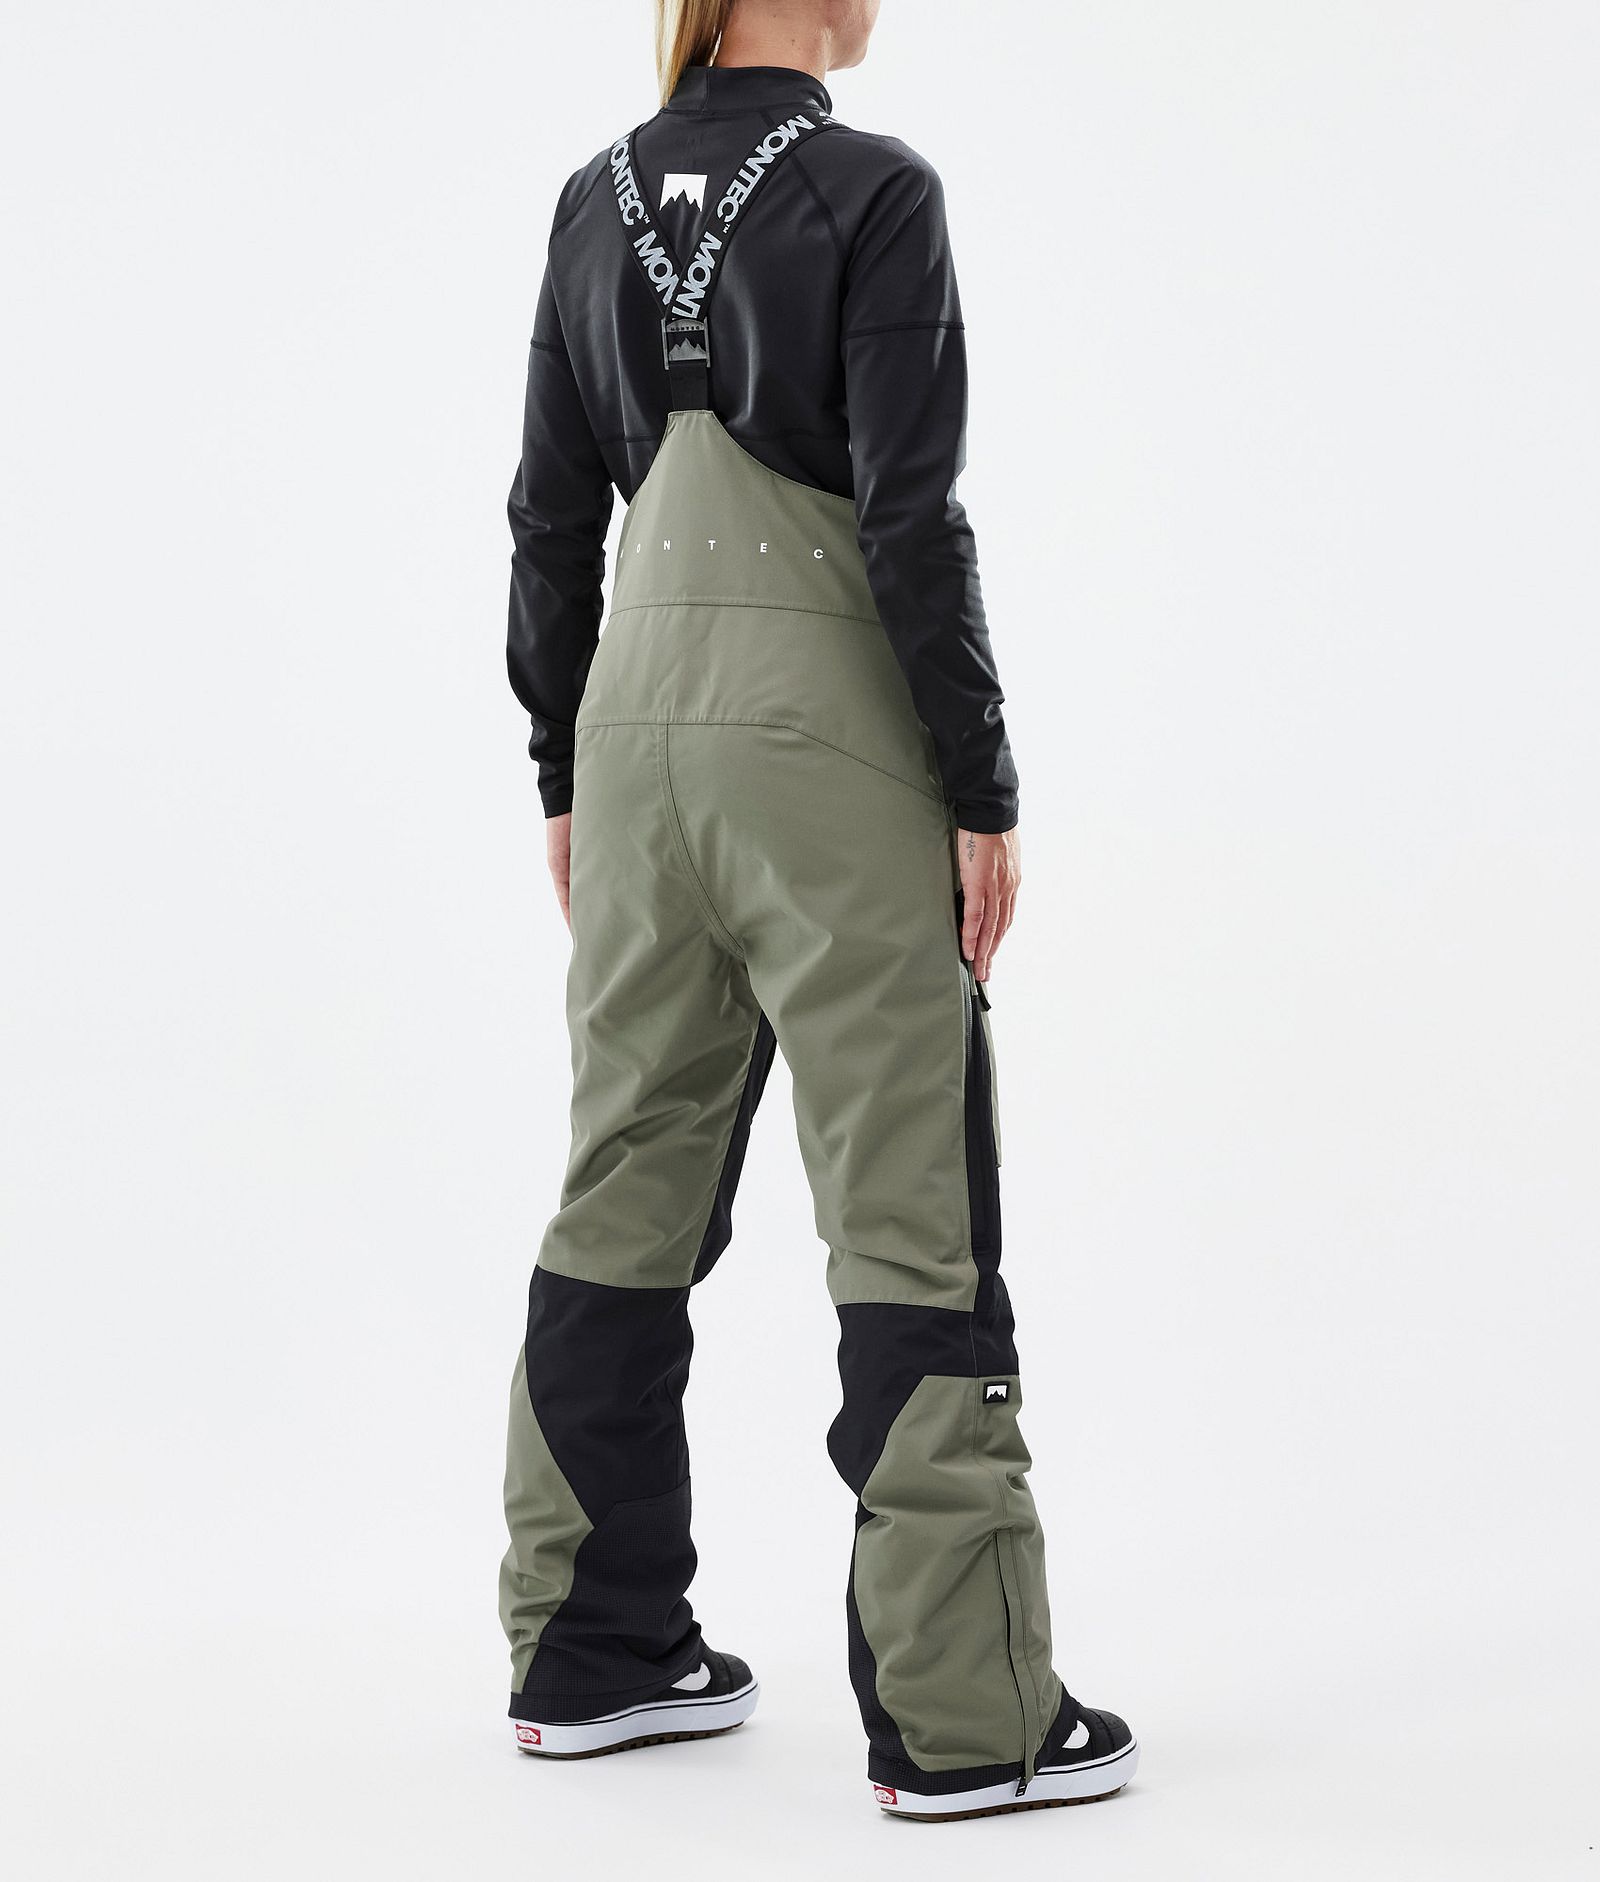 Fawk W Snowboard Pants Women Greenish/Black